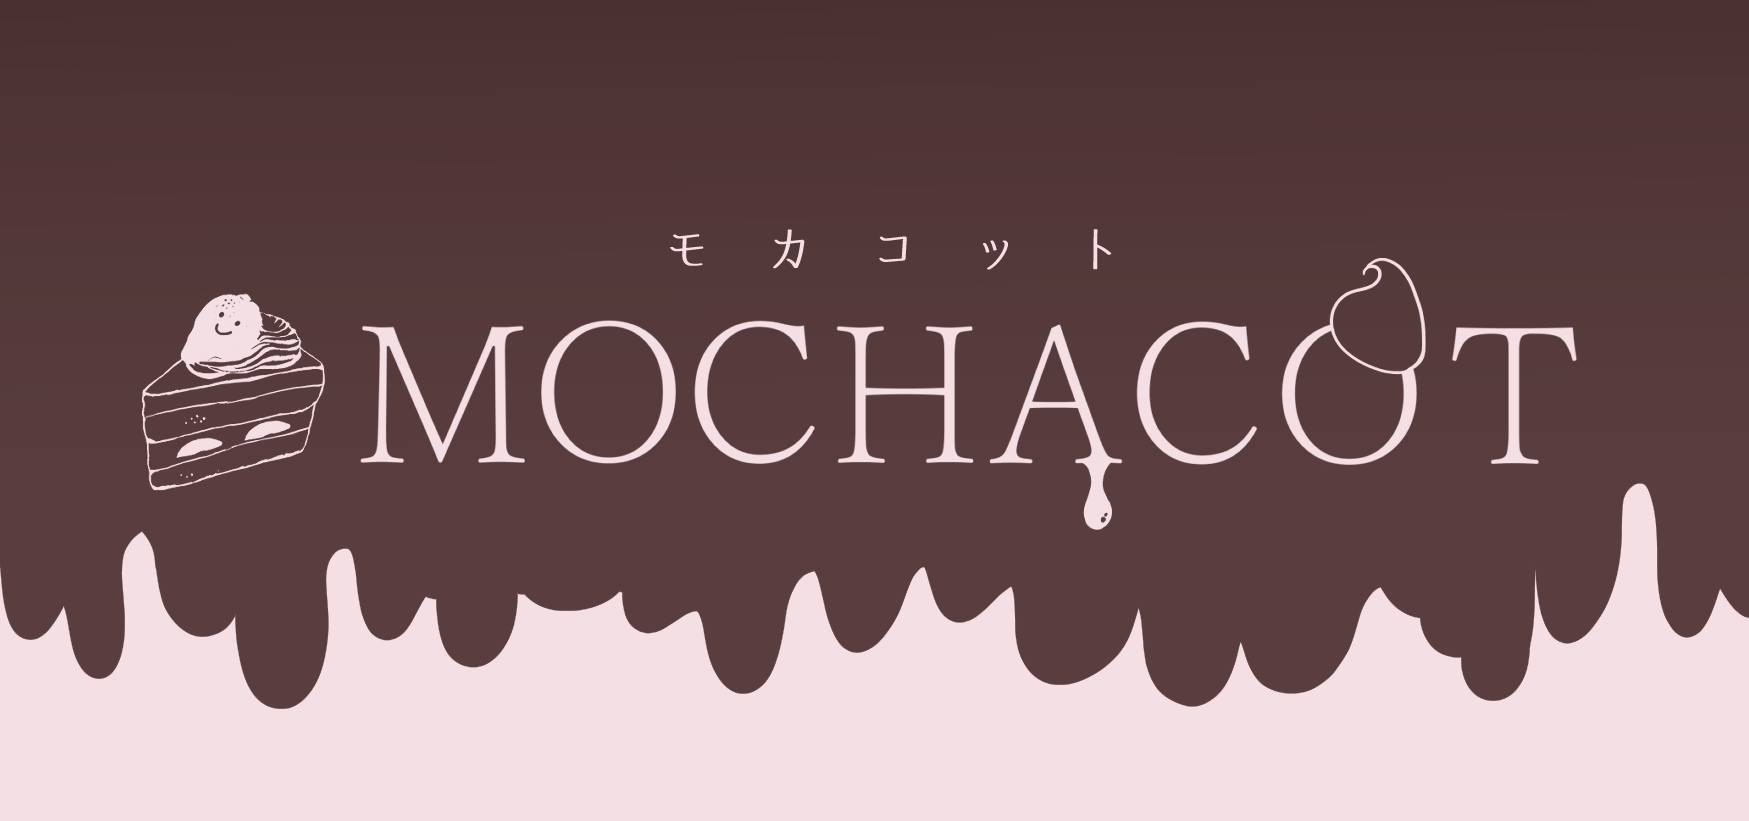 MOCHACOT